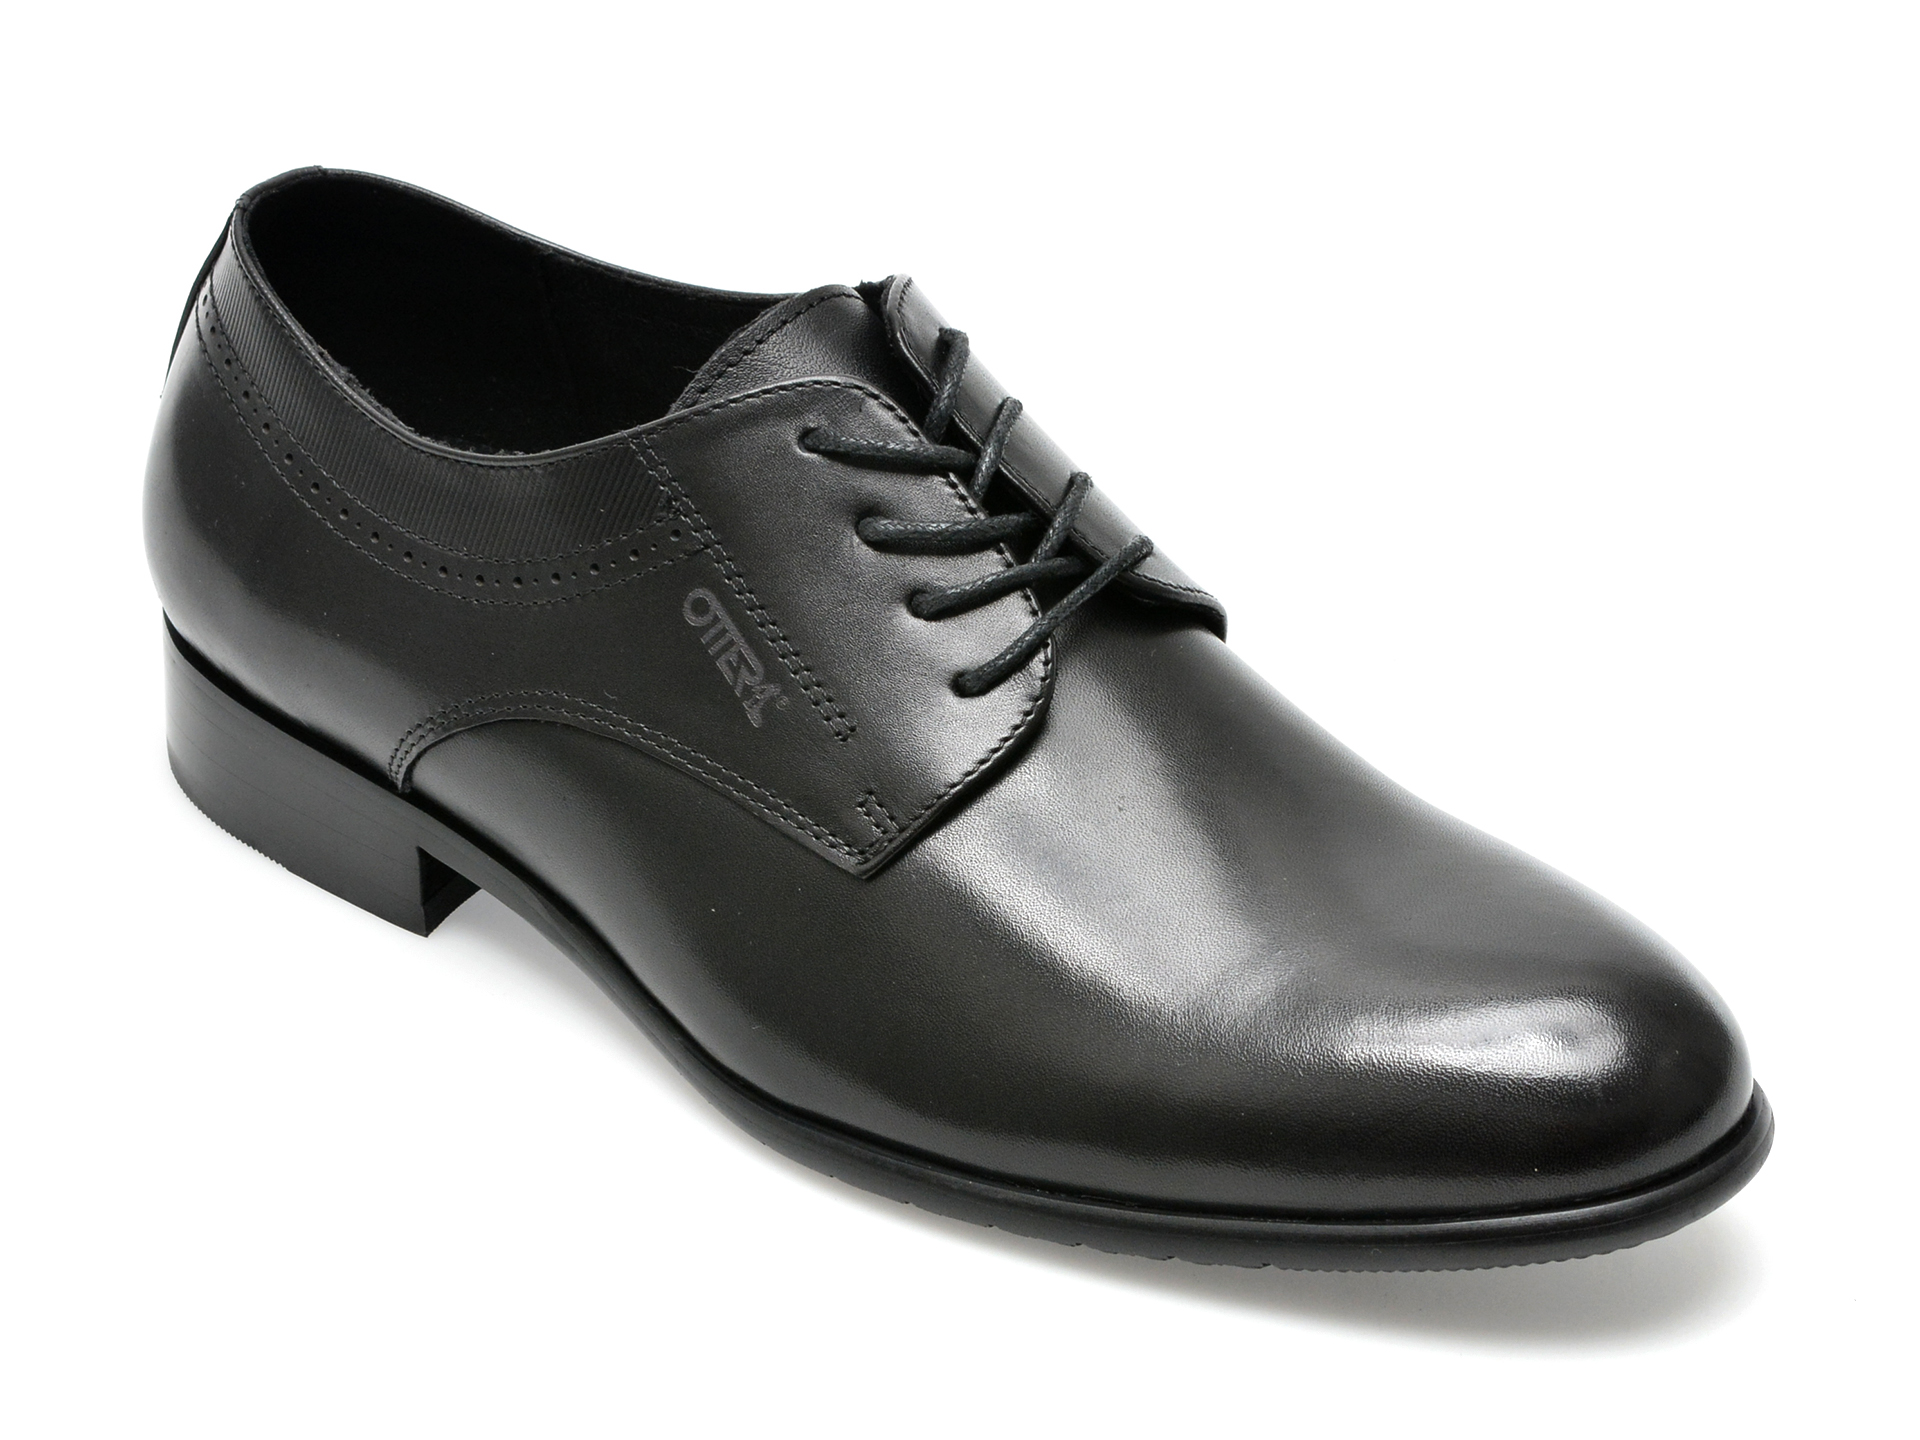 Pantofi OTTER negri, L120001, din piele naturala barbati 2023-03-19